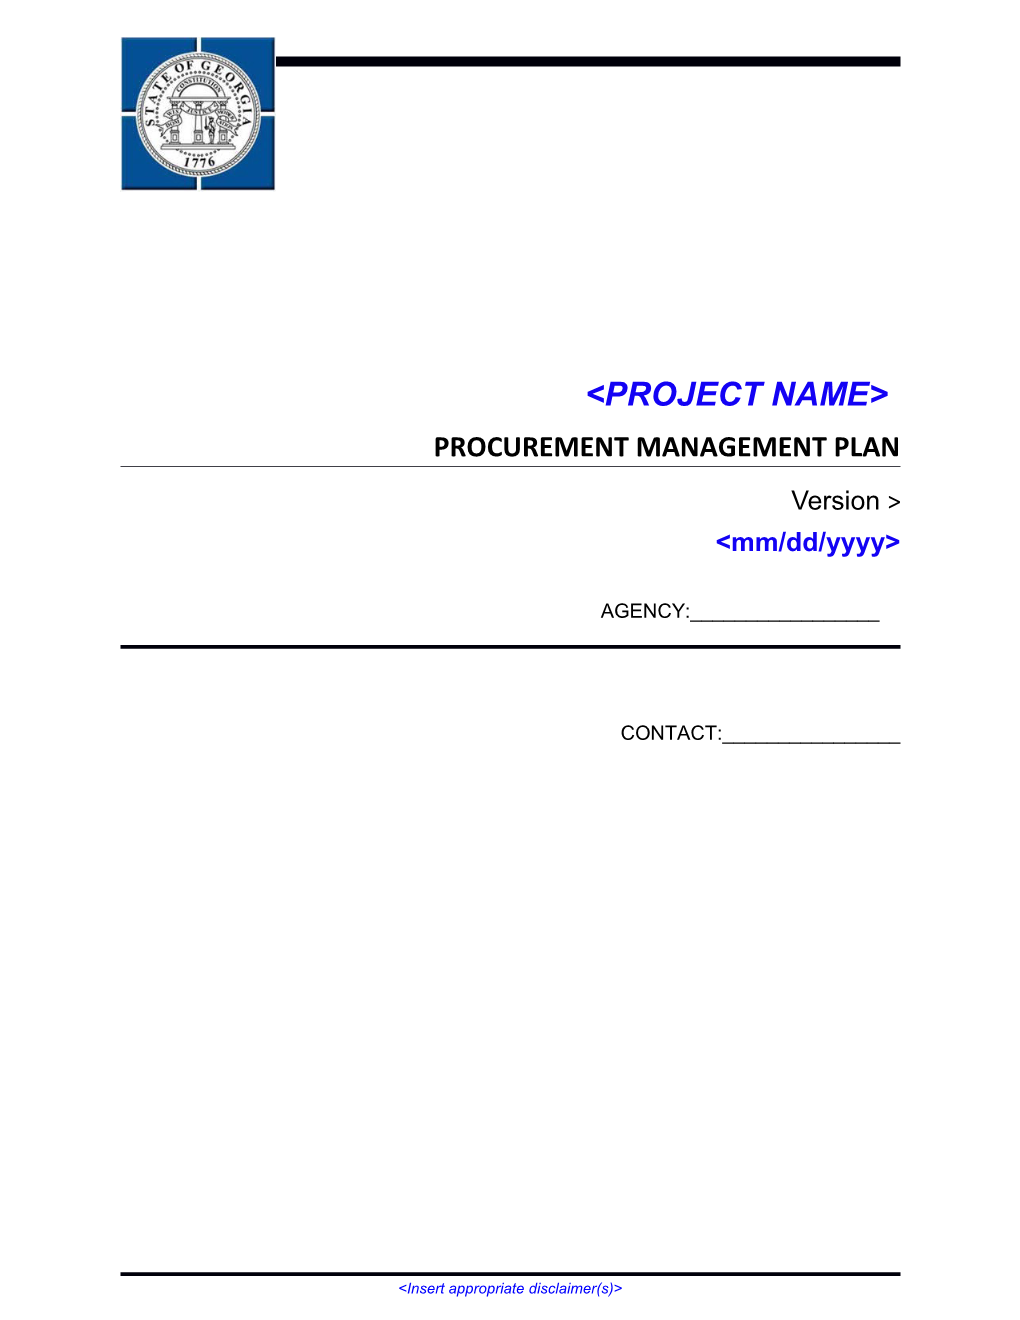 Procurement Management Plan Template